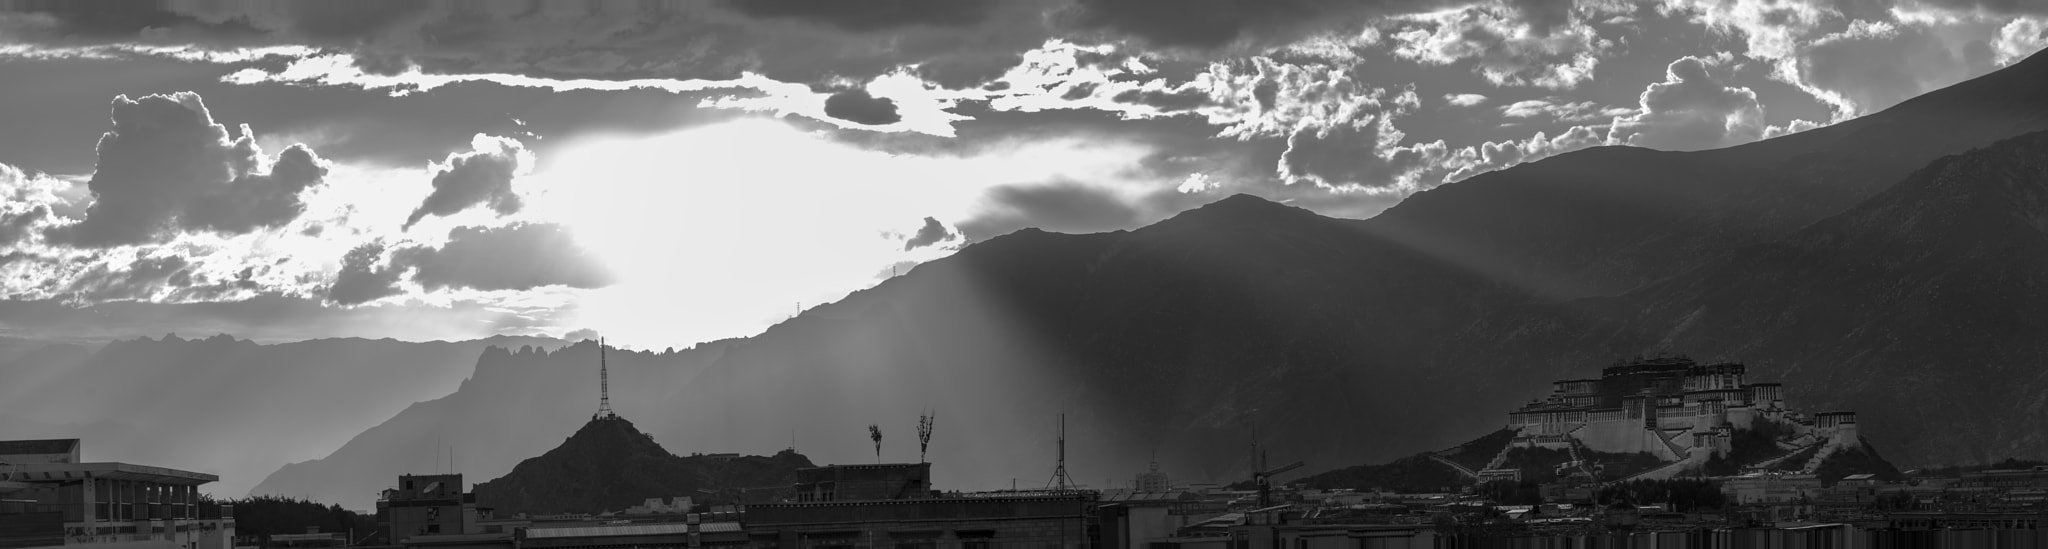 Nikon D610 sample photo. Lhasa photography